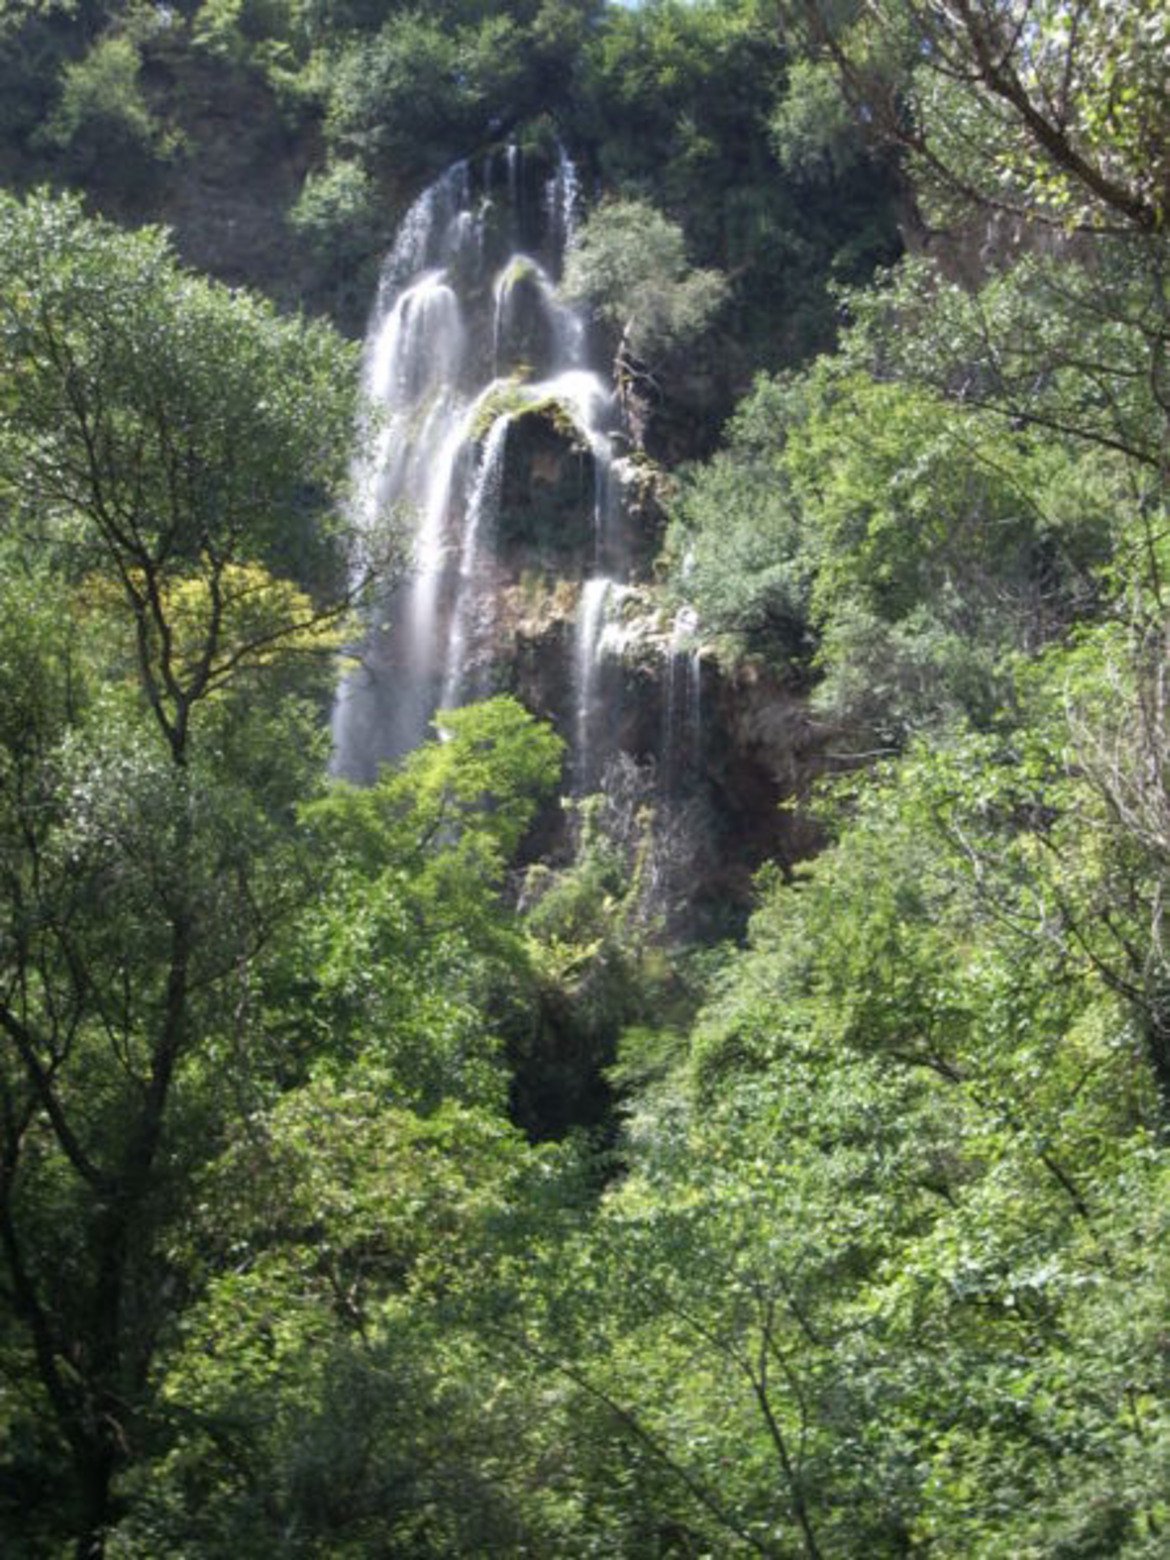 Полска Скакавица
Този изключително красив водопад се намира в Земенска планина, Кюстендил. Малко по по-труднодостъпен е от останалите, но си струва гледката. Намира се до махала Водопада на село Полска Скакавица в живописния Земенски пролом на река Струма. Височината му е около 50 метра.